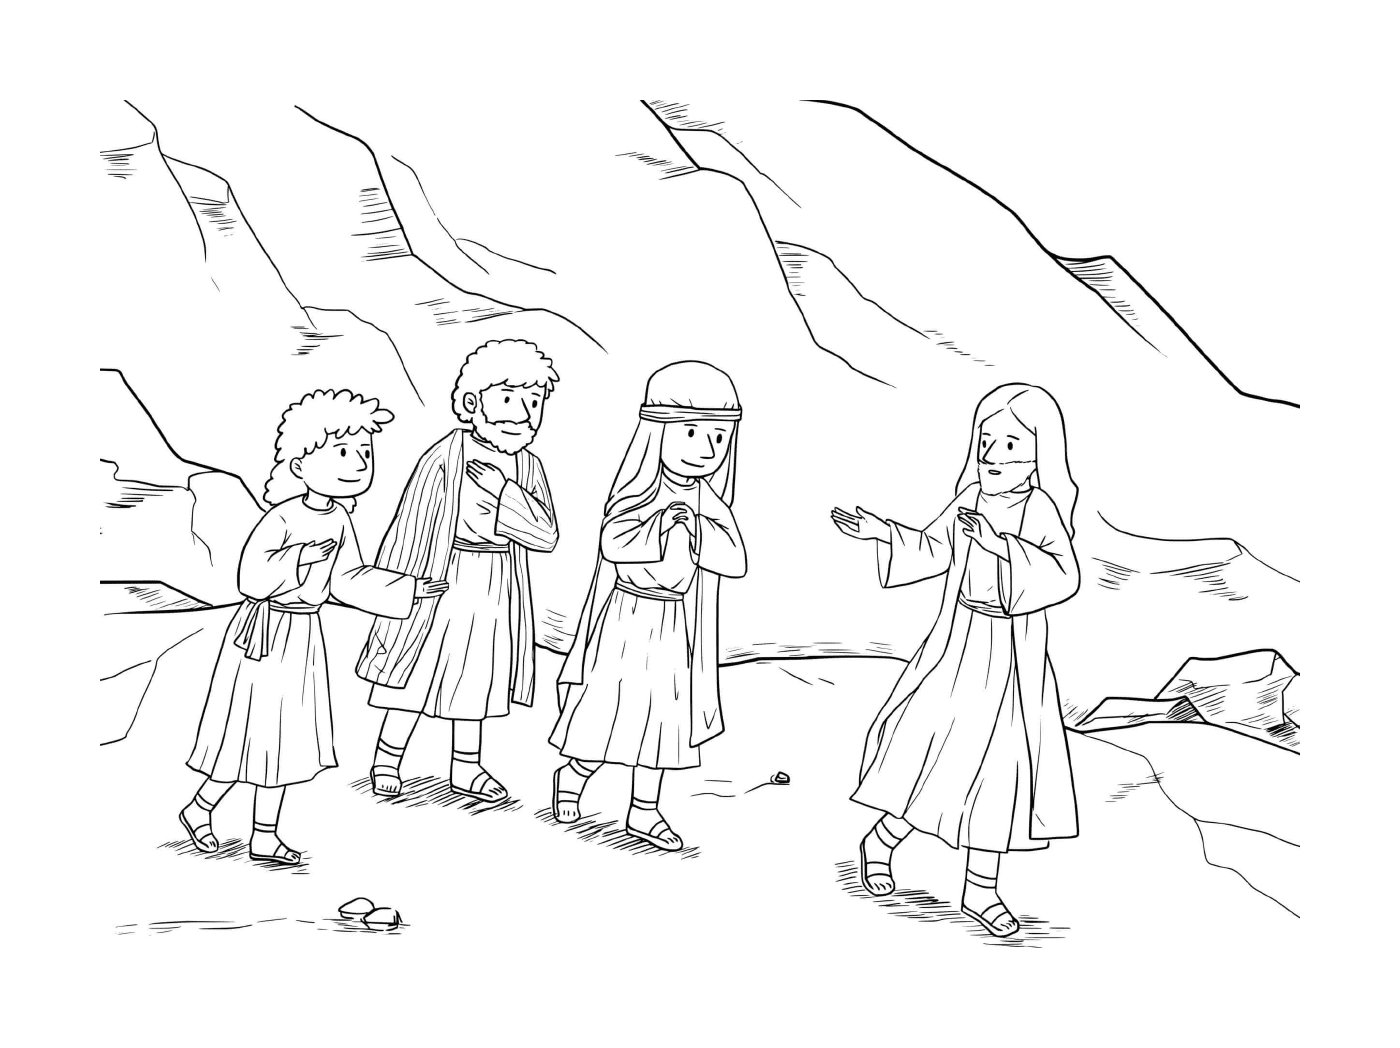   Groupe de personnes devant une montagne 